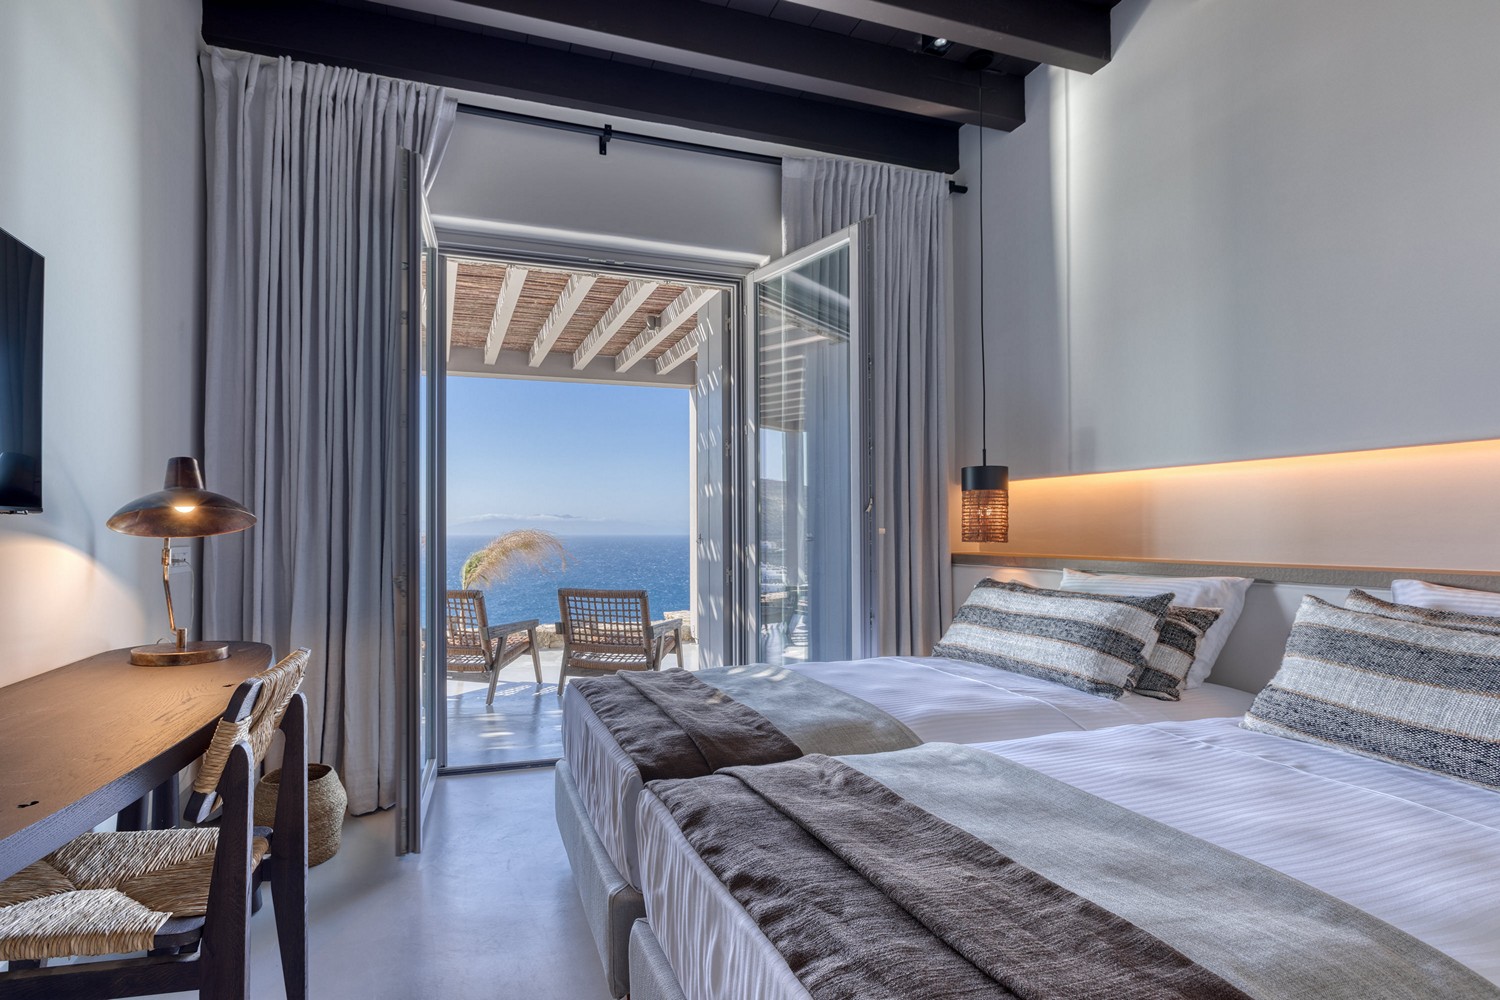 Two beds in a Mykonos villa